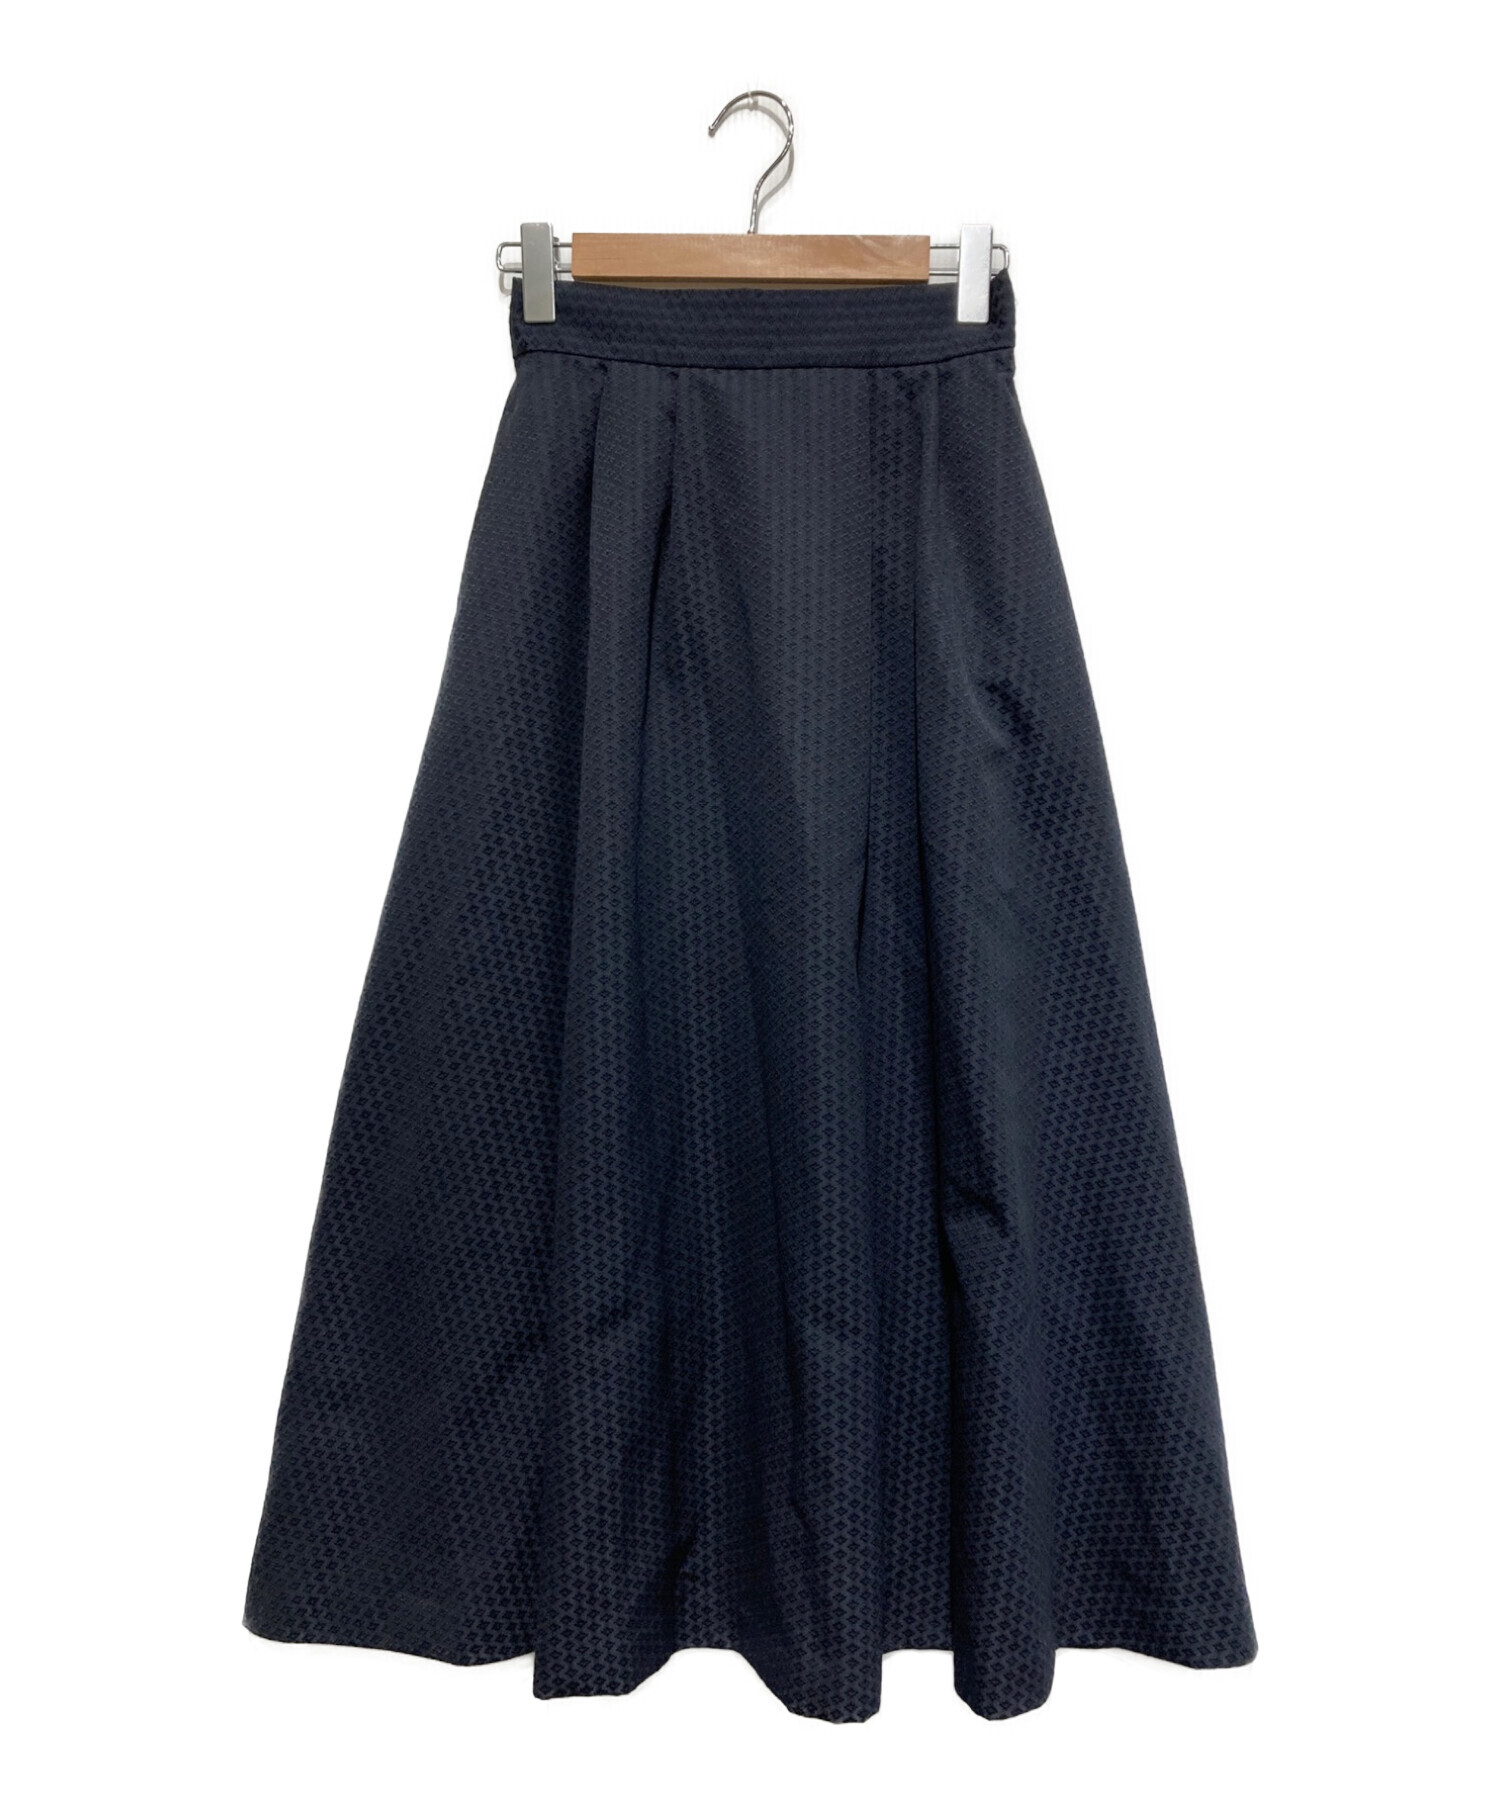 Audire (アウディーレ) ブルーミングジャガードスカート ネイビー サイズ:SIZE S